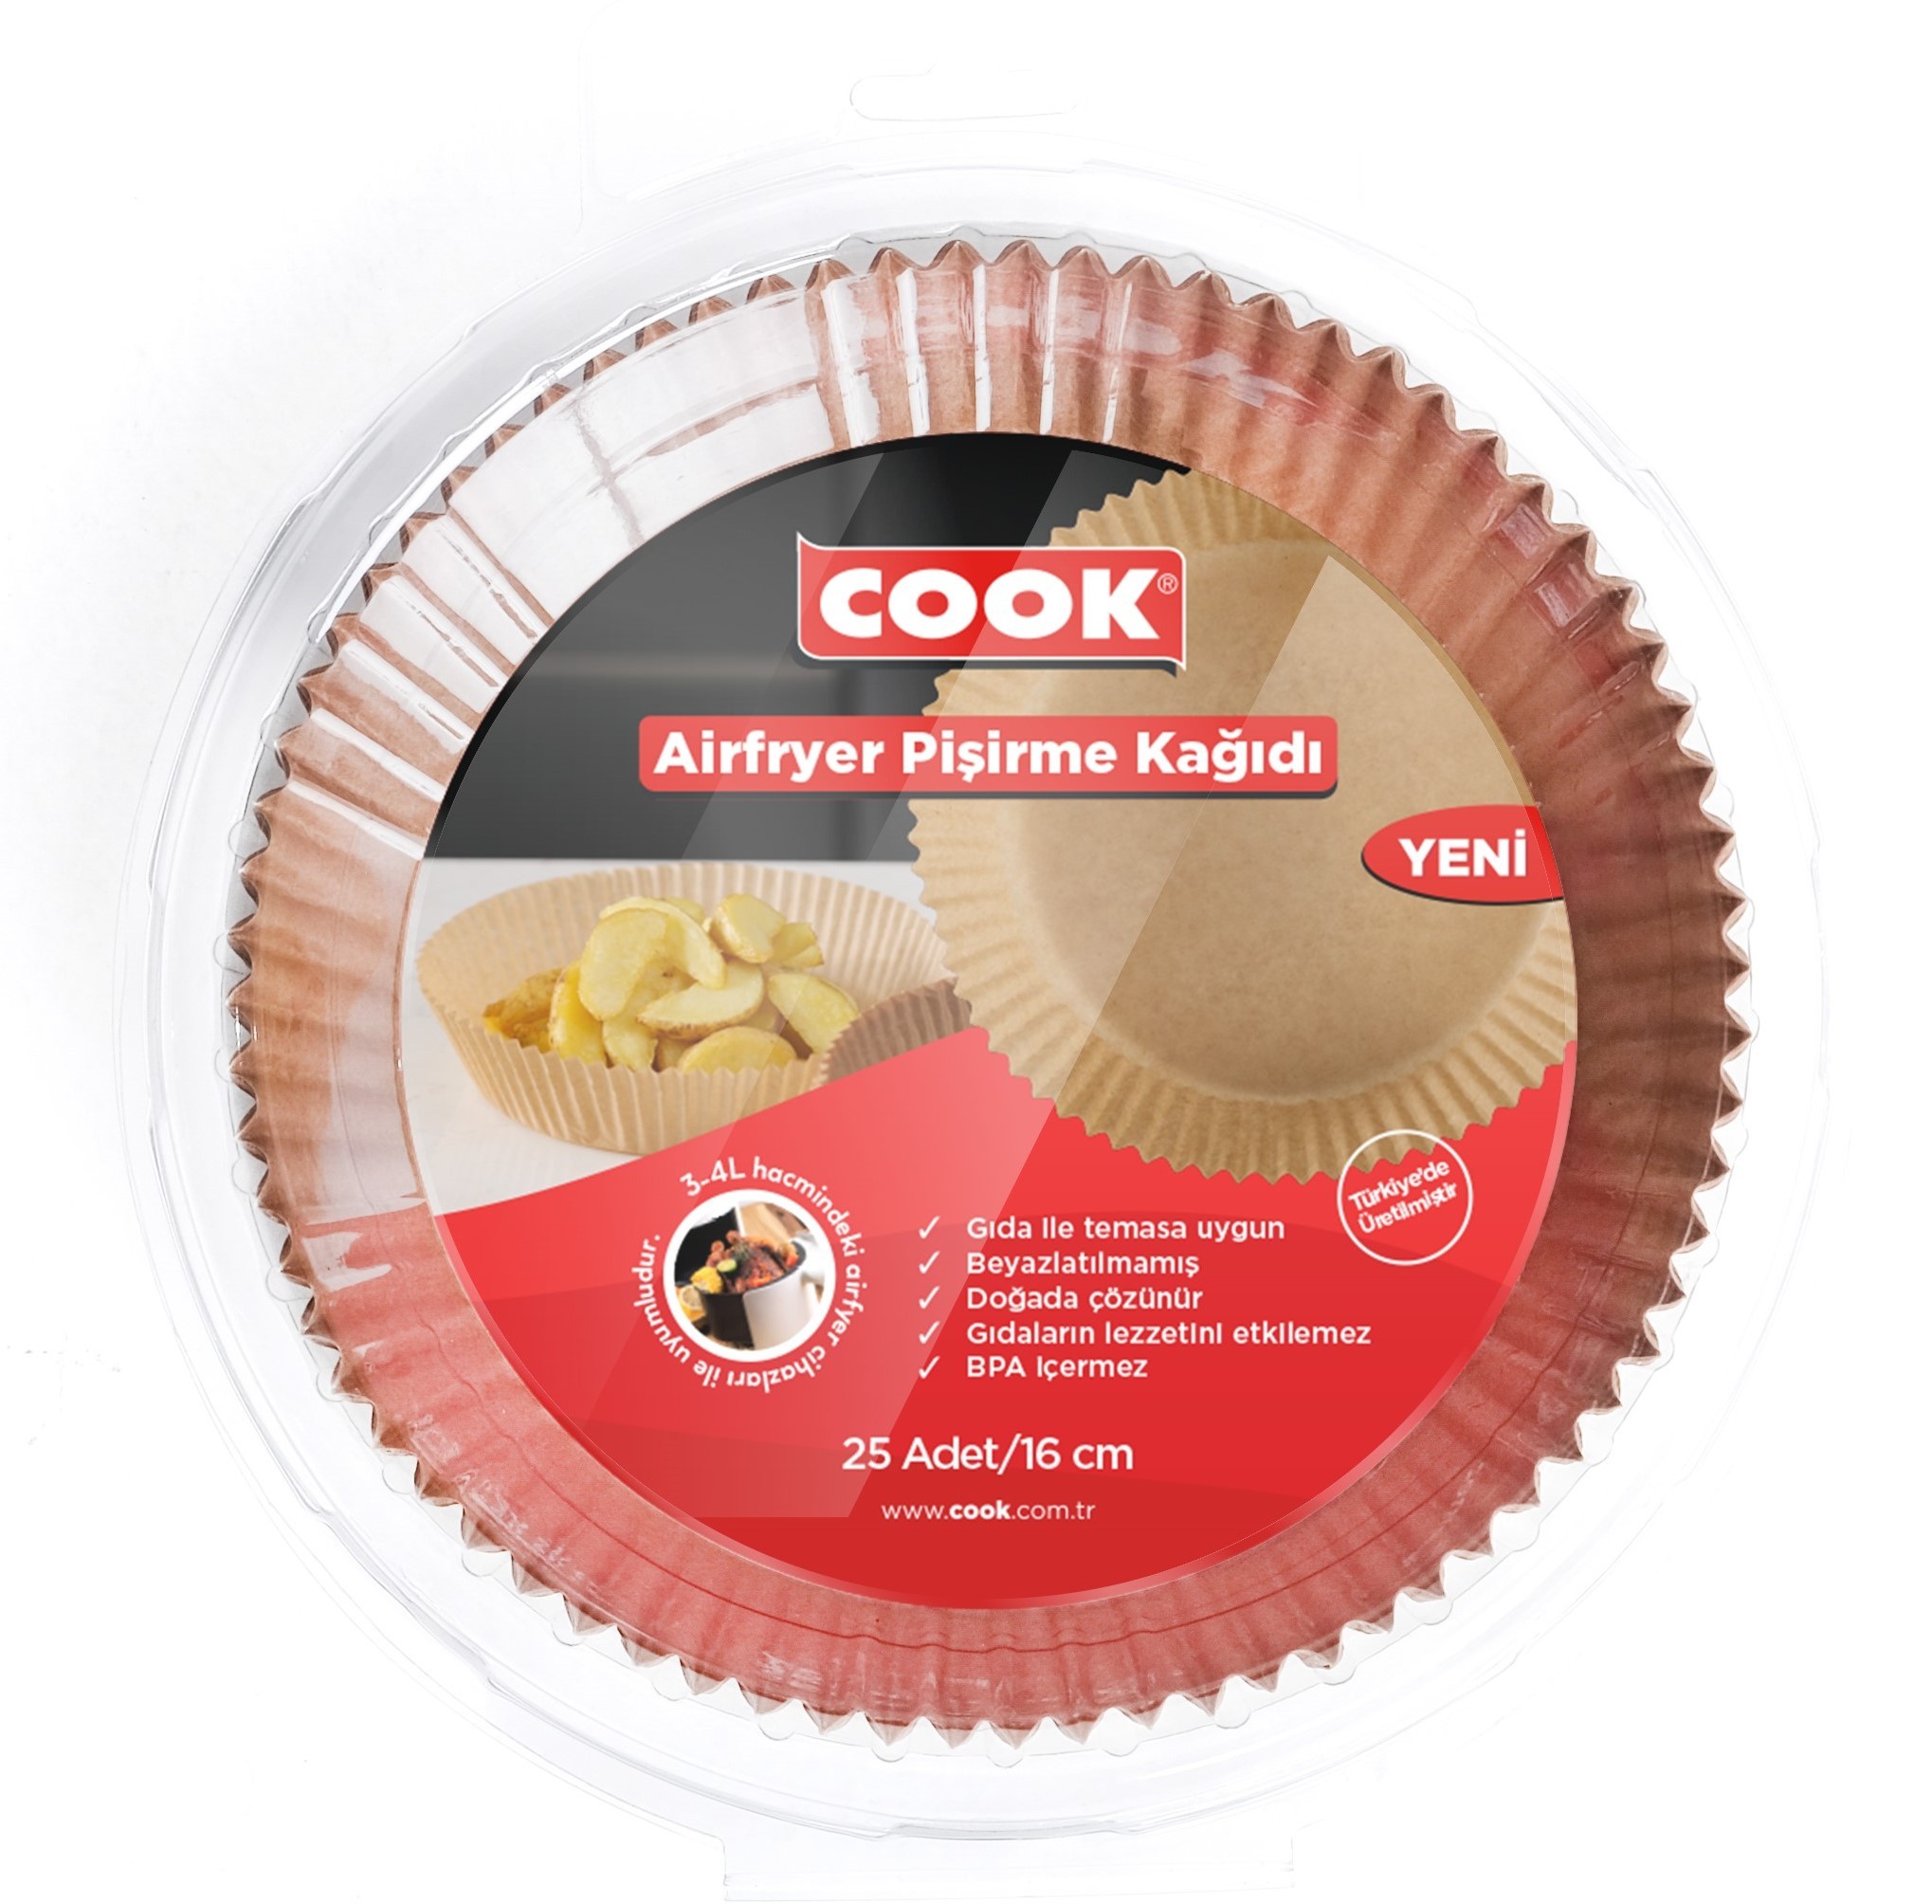 COOK Airfryer Pişirme Kağıdı 25 Adet 16 cm